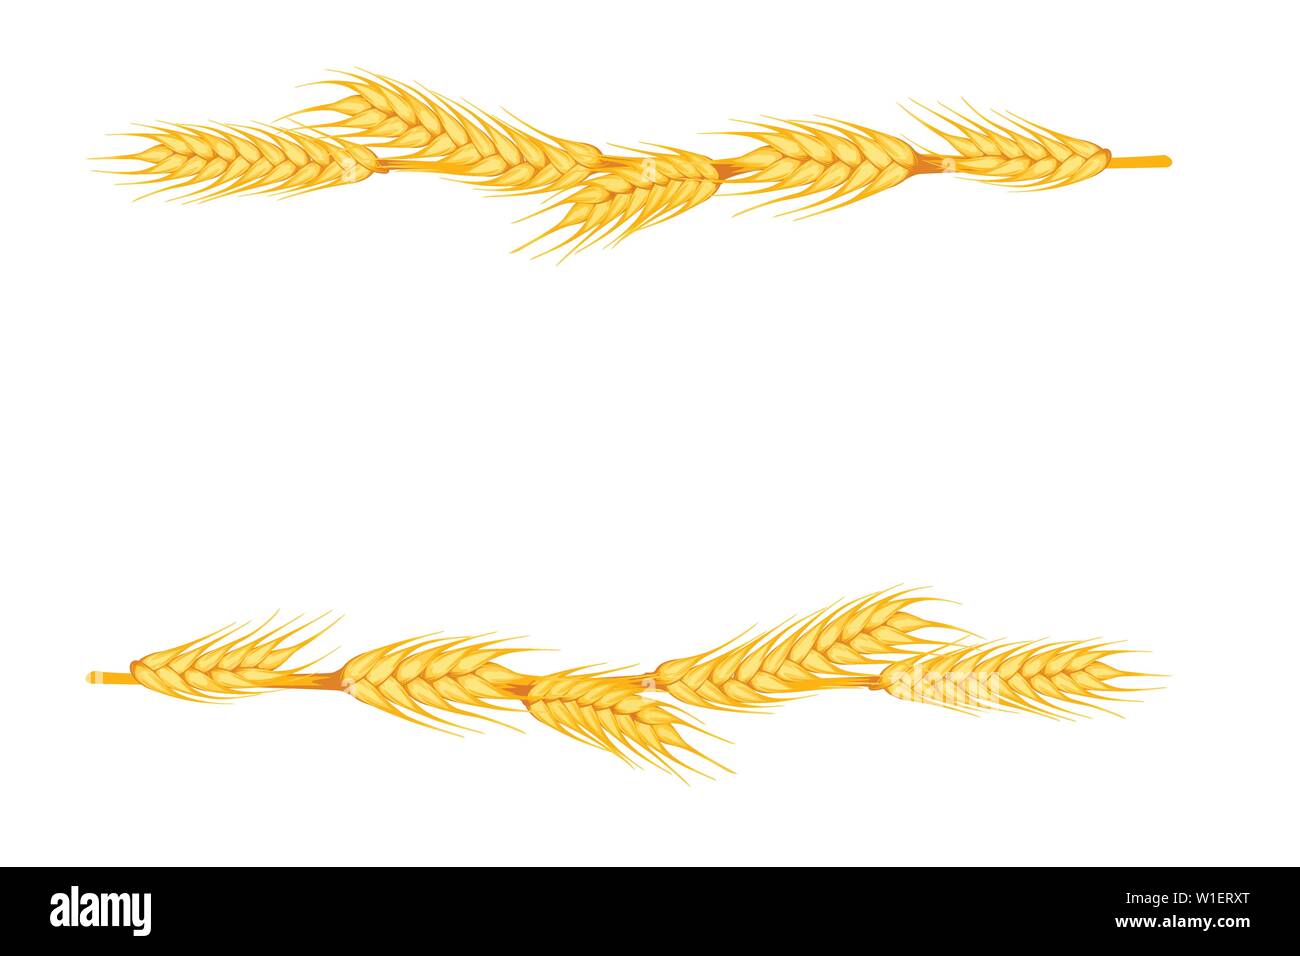 Des épis de blé se trouvent dans une ligne sur fond blanc télévision vector illustration. Illustration de Vecteur